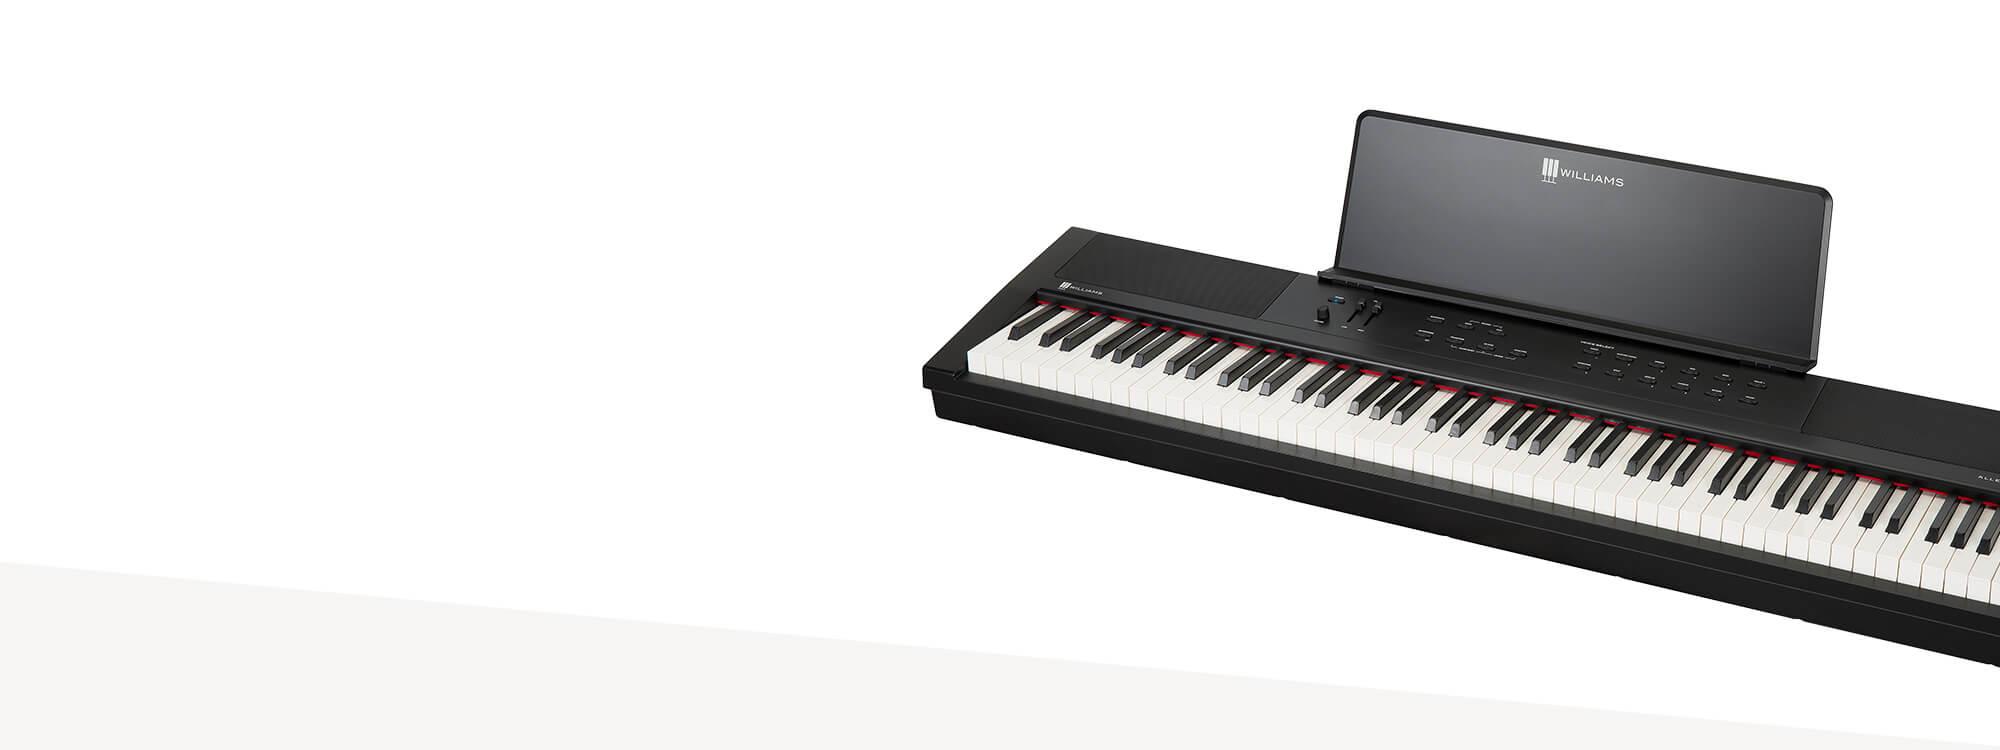 Williams Allegro III portable digital piano.